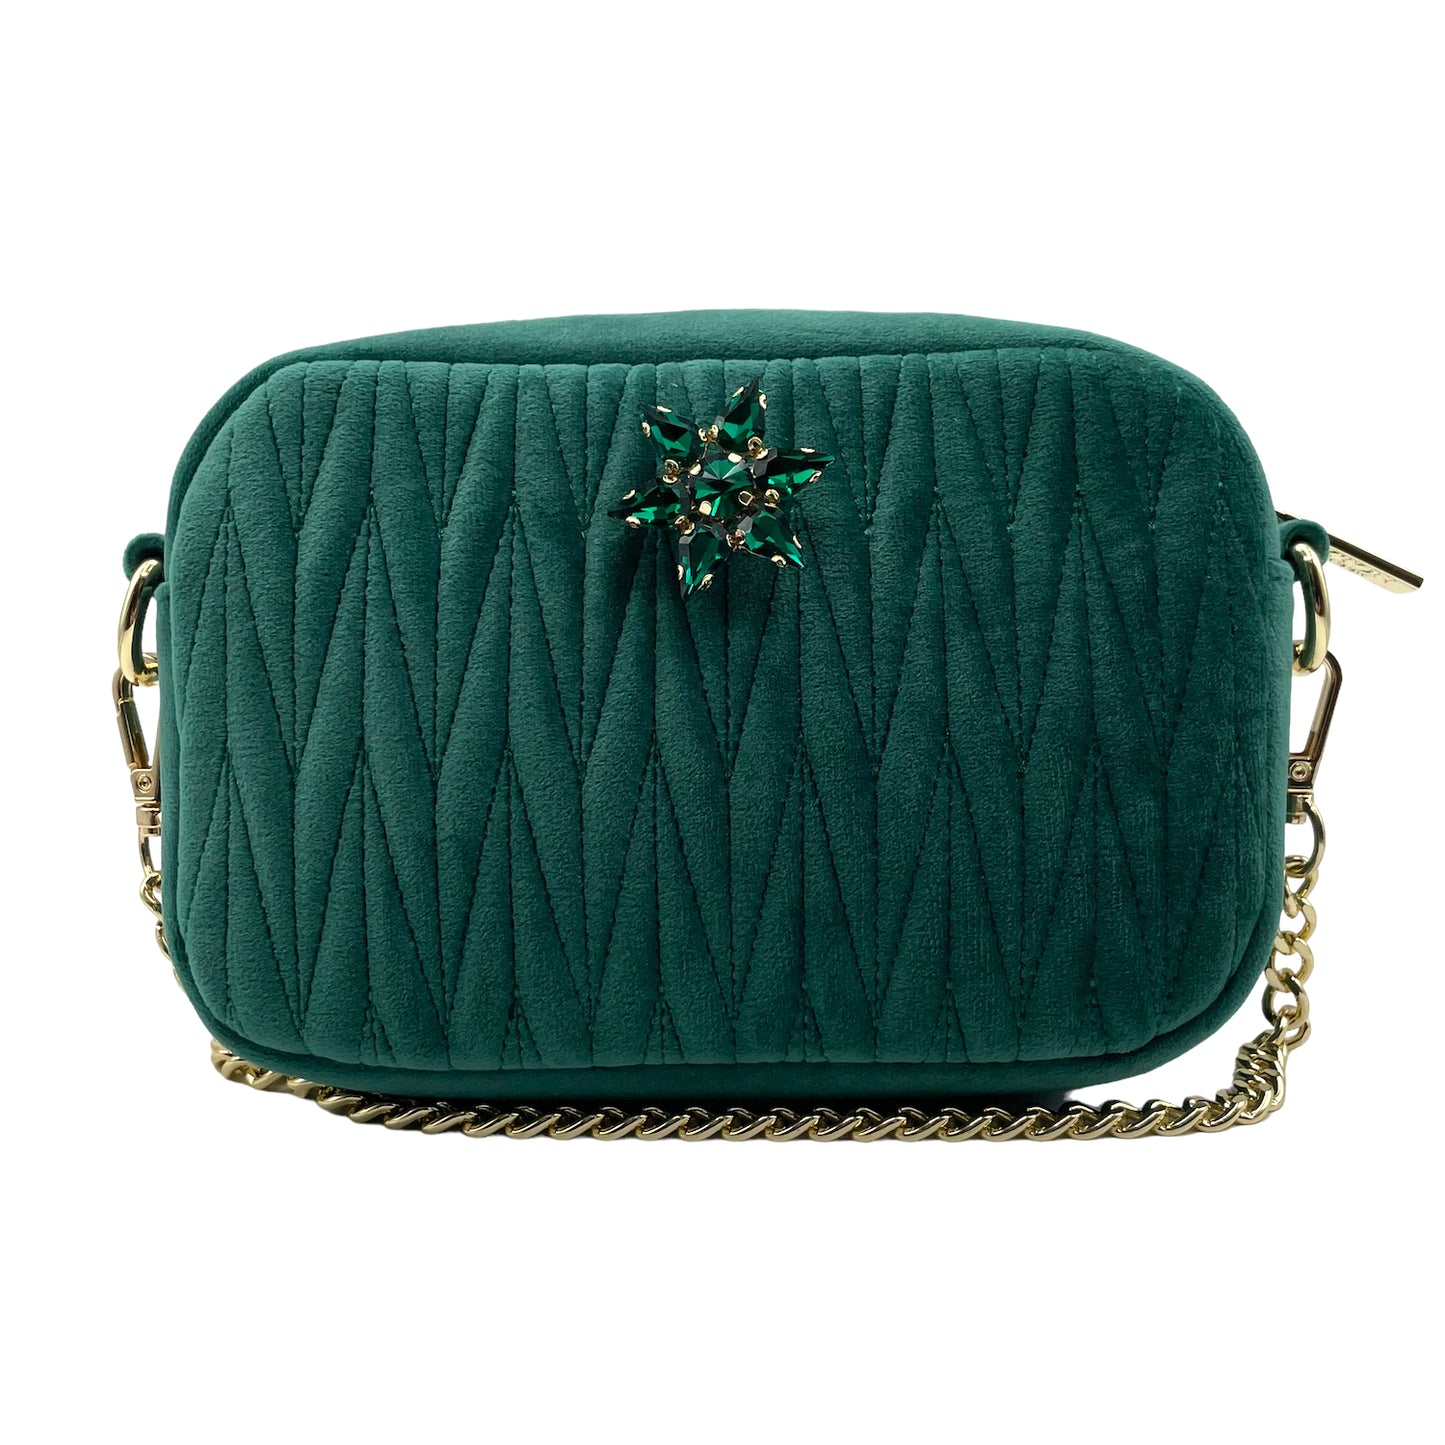 Velvet Rivington handbag in green, recycled velvet